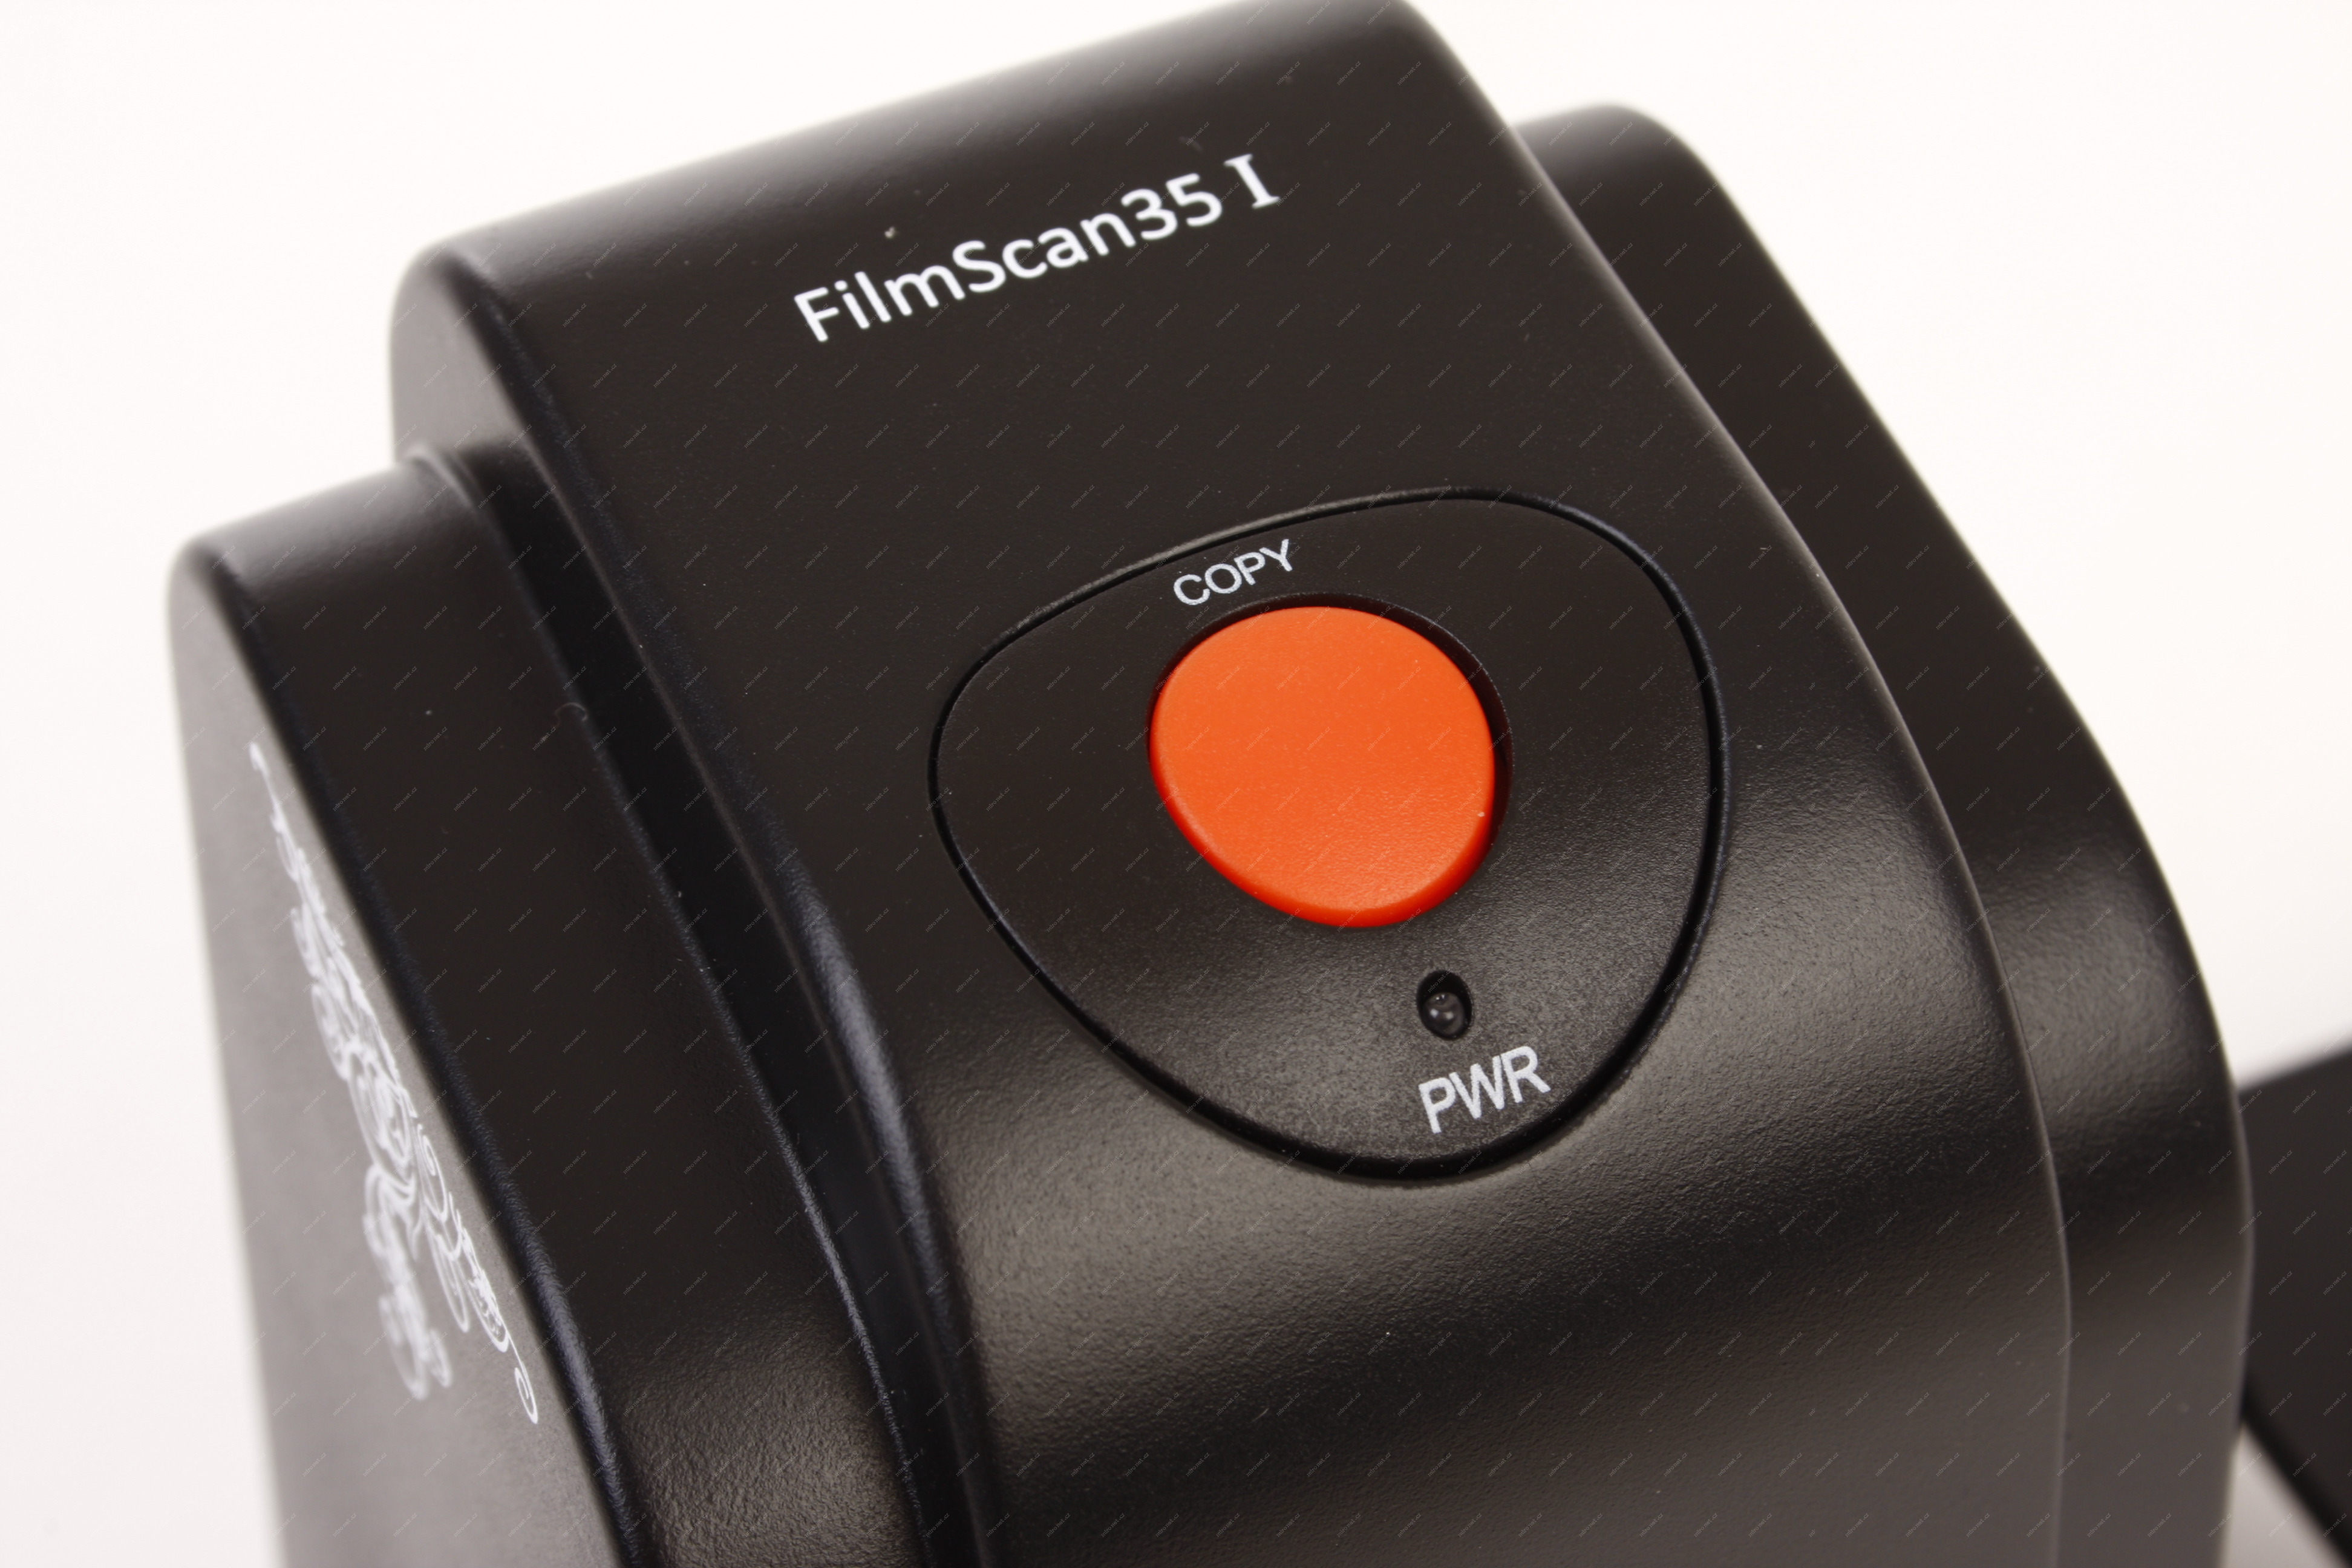 filmscan 35 i innovative technology